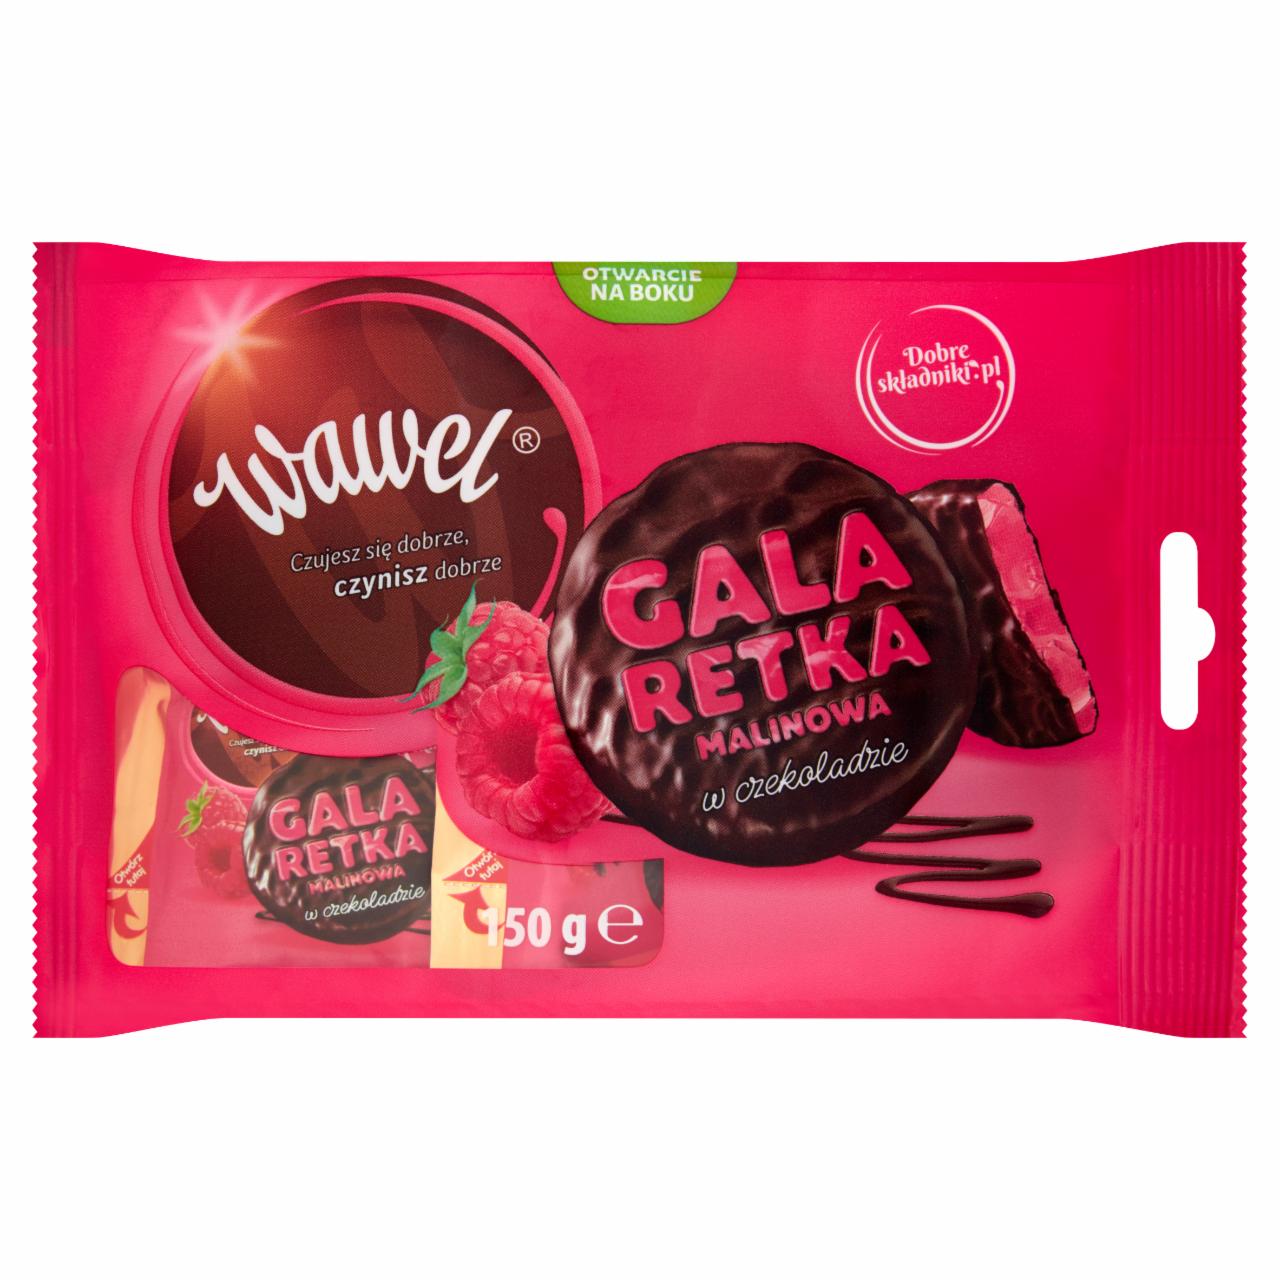 Zdjęcia - Wawel Galaretka malinowa w czekoladzie 150 g